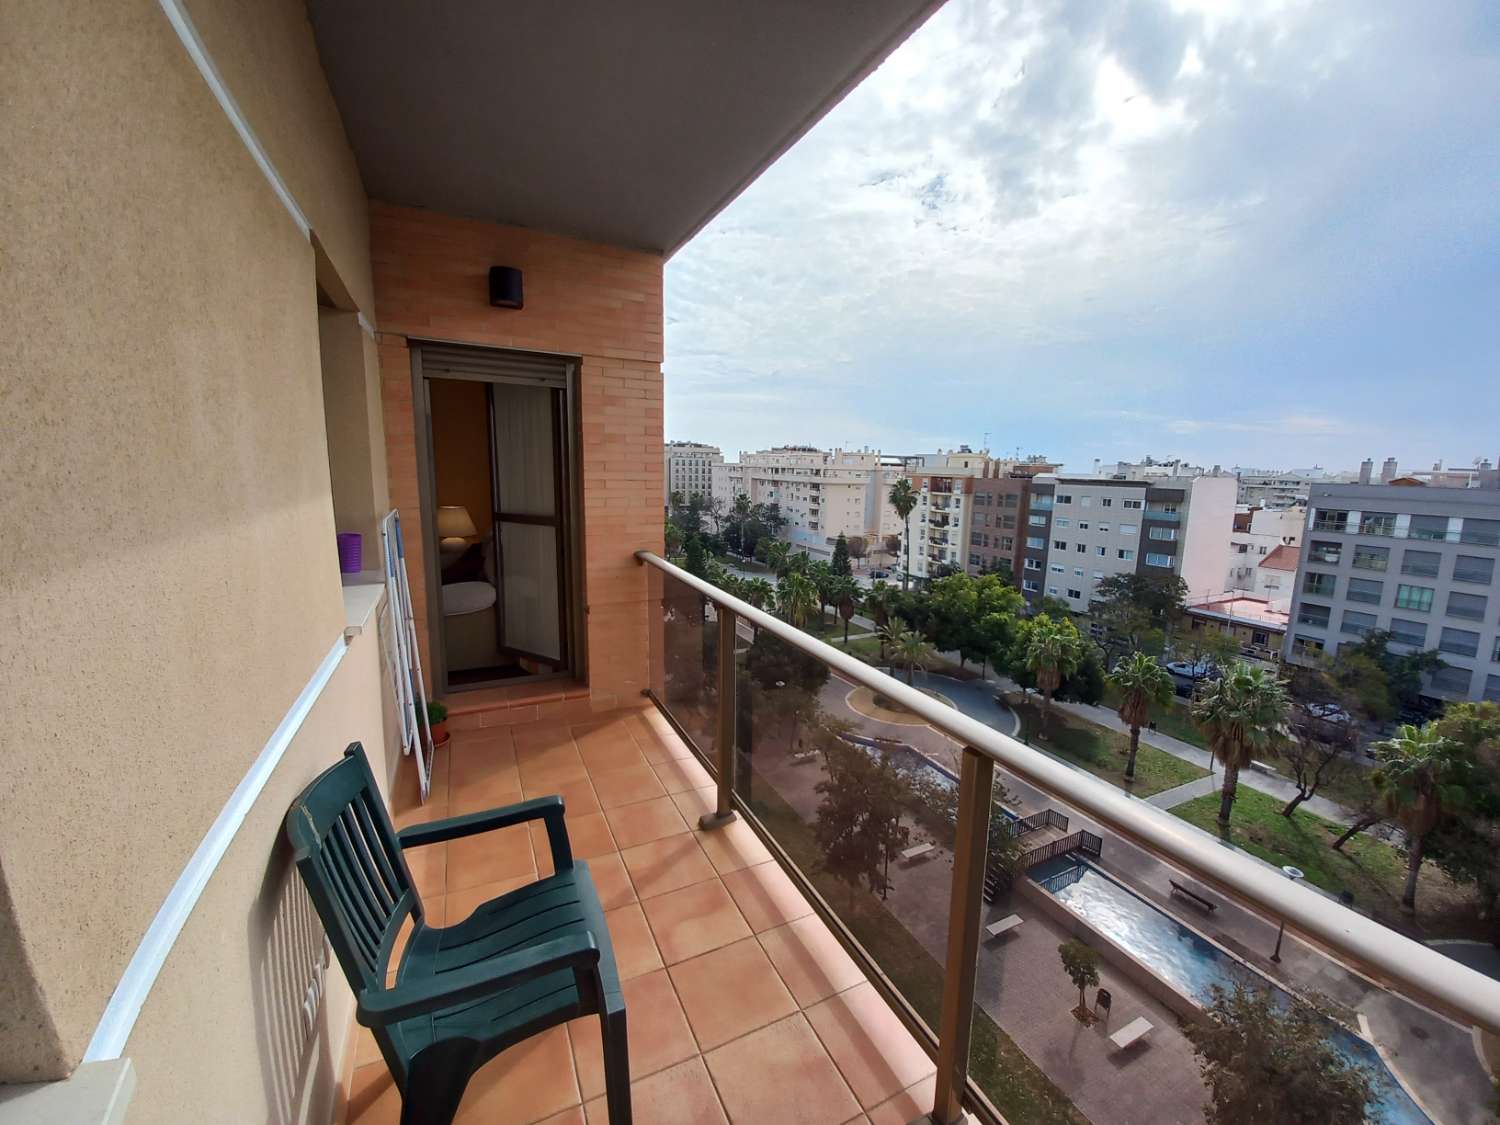 Magnifique penthouse à 200 m de la plage de Poniente dans la capitale Malaga